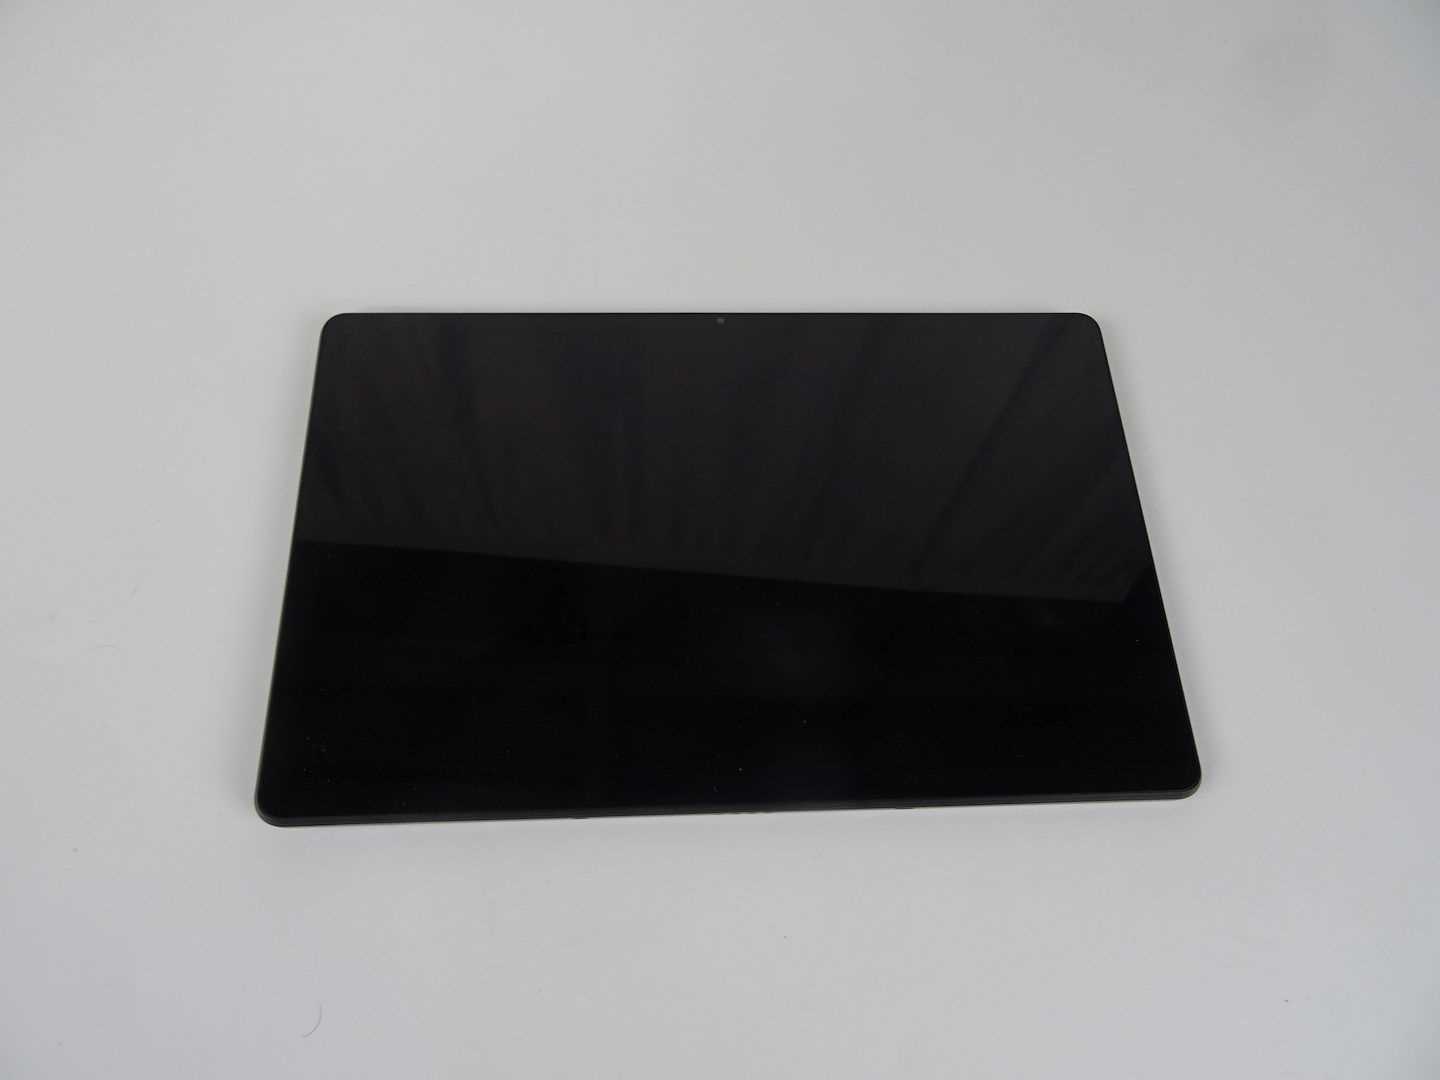 Los 97 - Tablet-PC Lenovo Tab P11 Plus grau